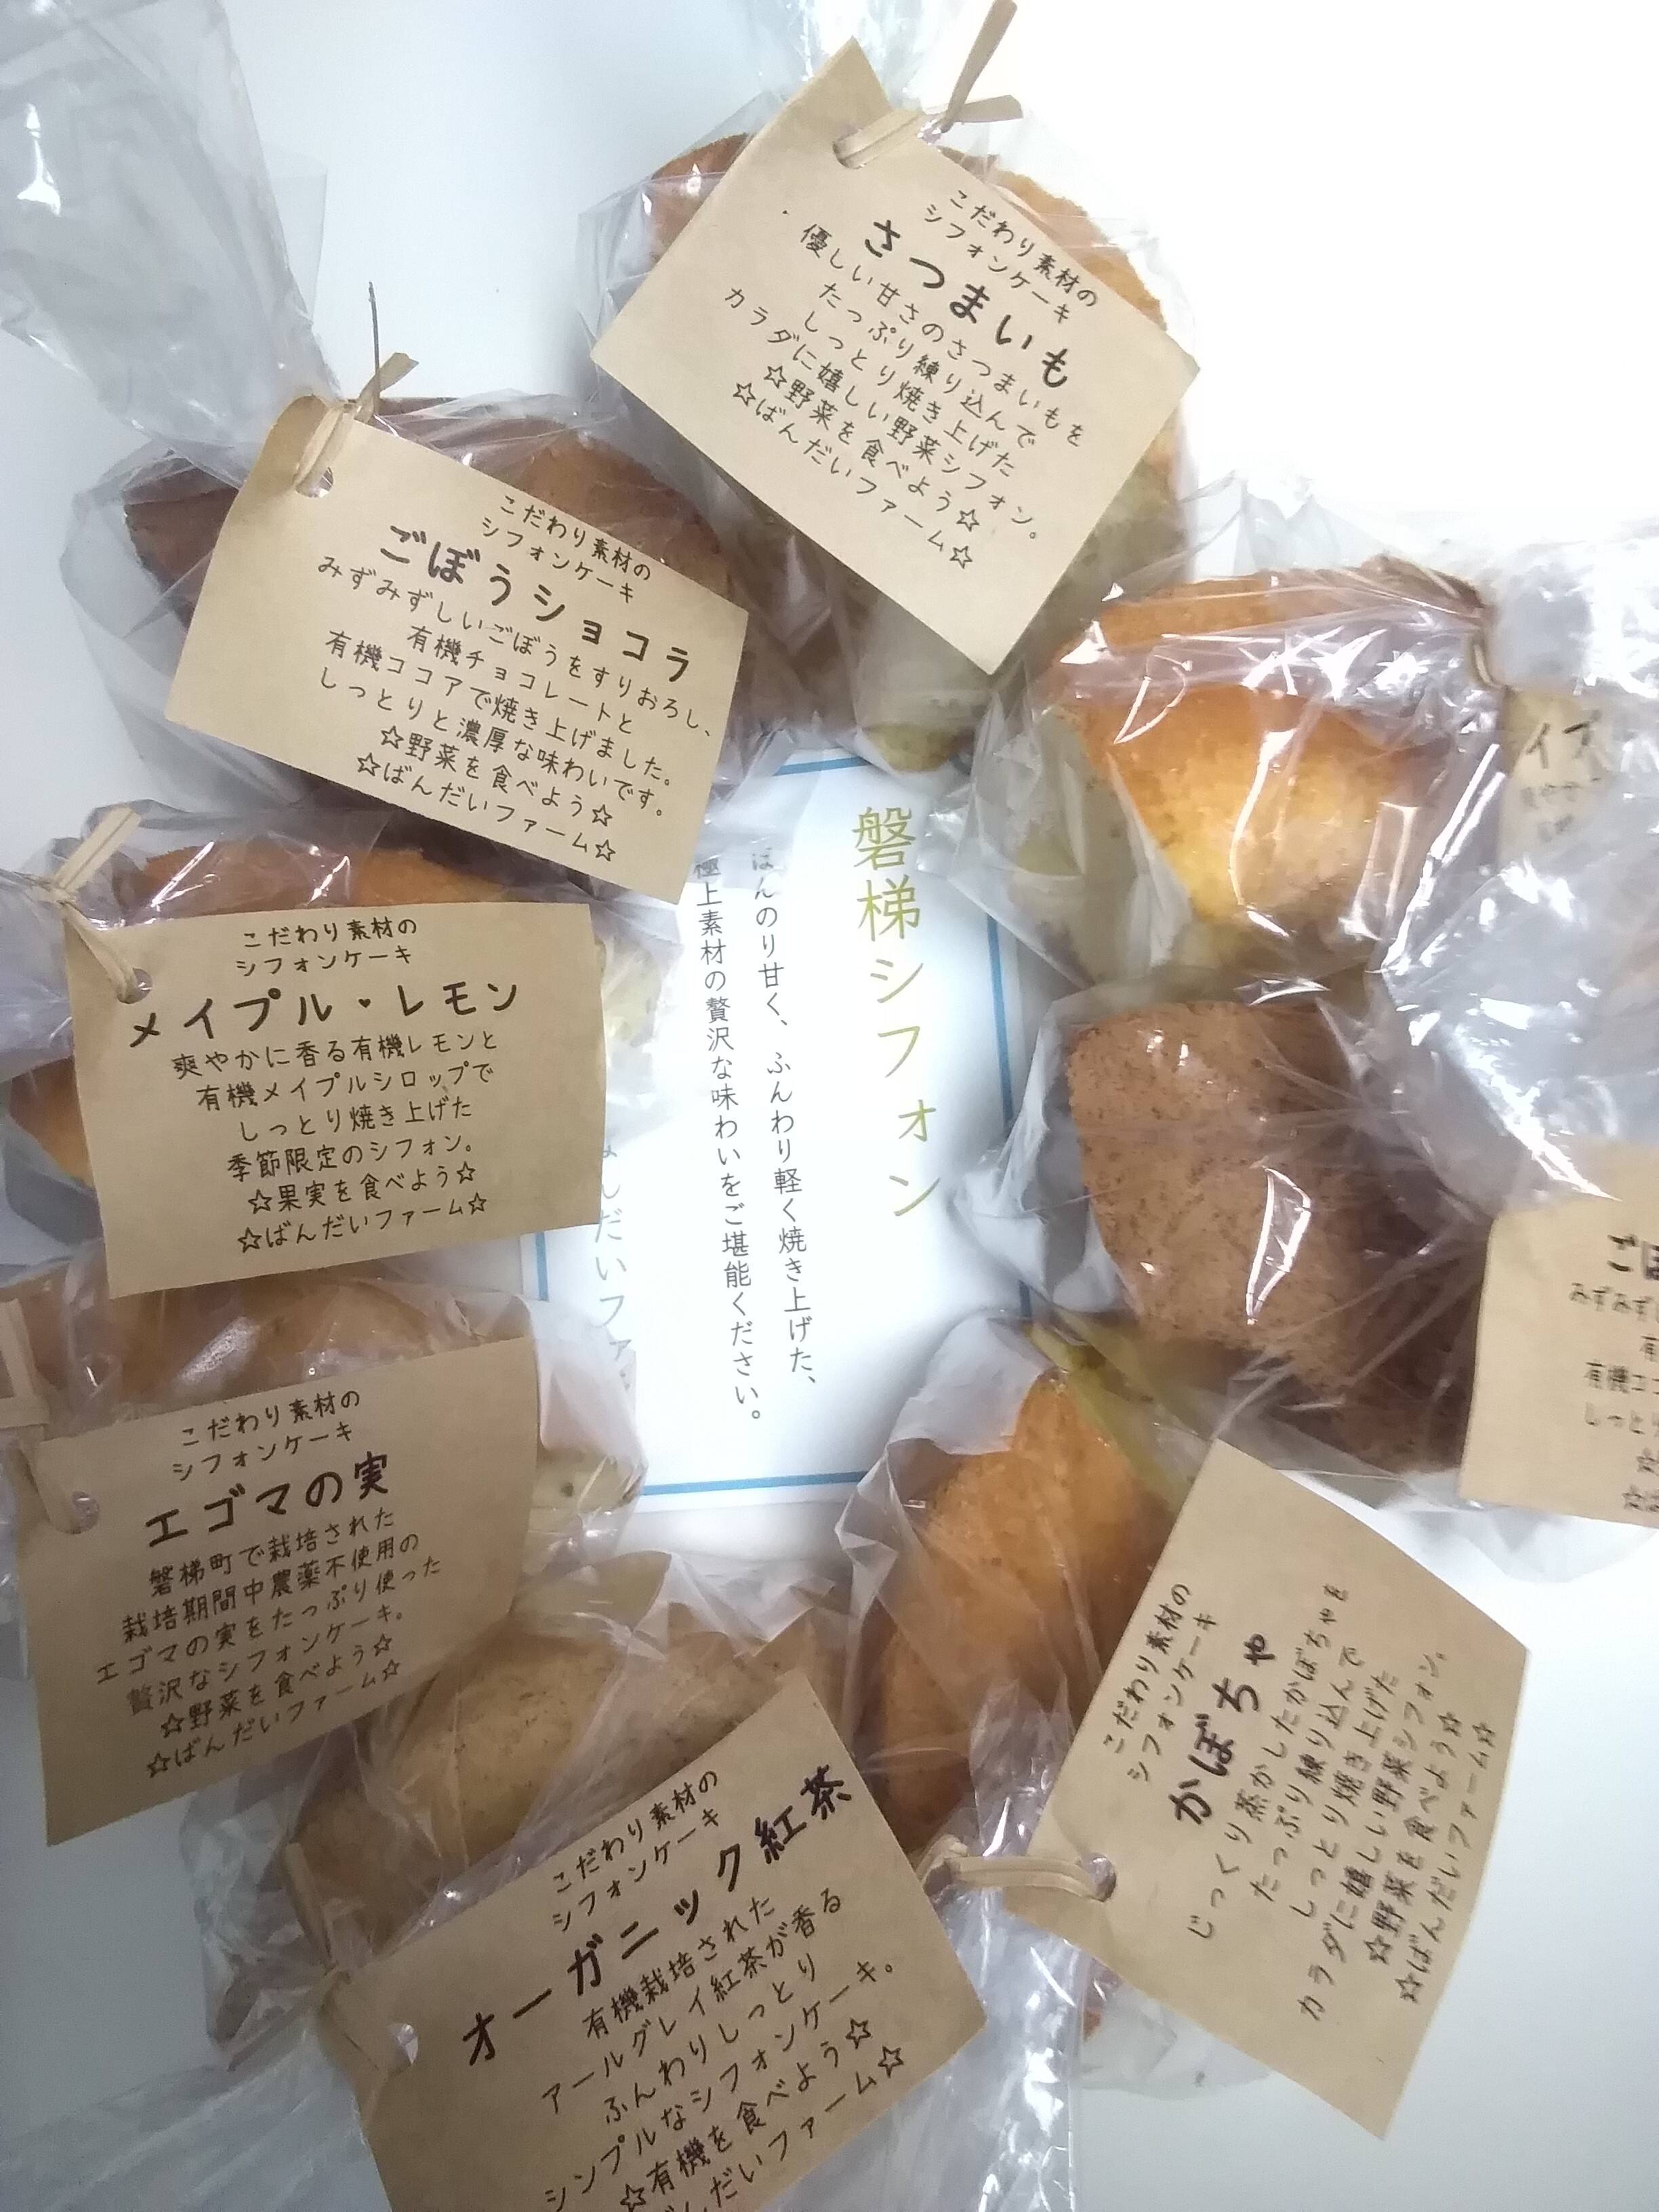 Yukataさんがばんだいファームさんのたっぷりお試し8個2ホール分 野菜と果実のシフォンケーキ 地元食材や有機素材で豊富な種類が直売所で好評 が 届いたよ を投稿しました 食べチョク